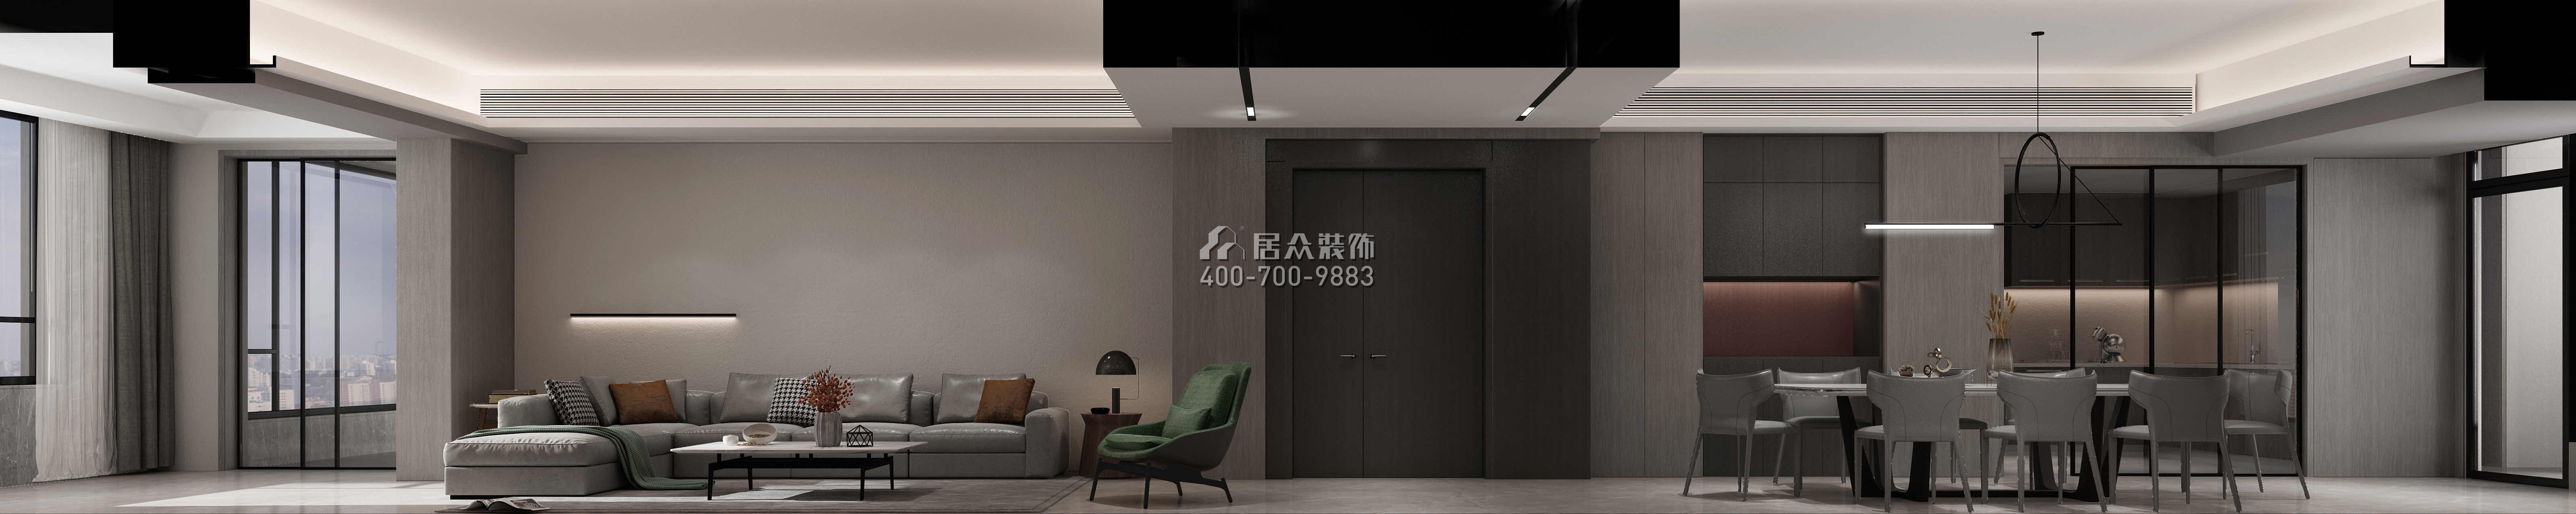 中建江山壹號300平方米現代簡約風格平層戶型客廳裝修效果圖